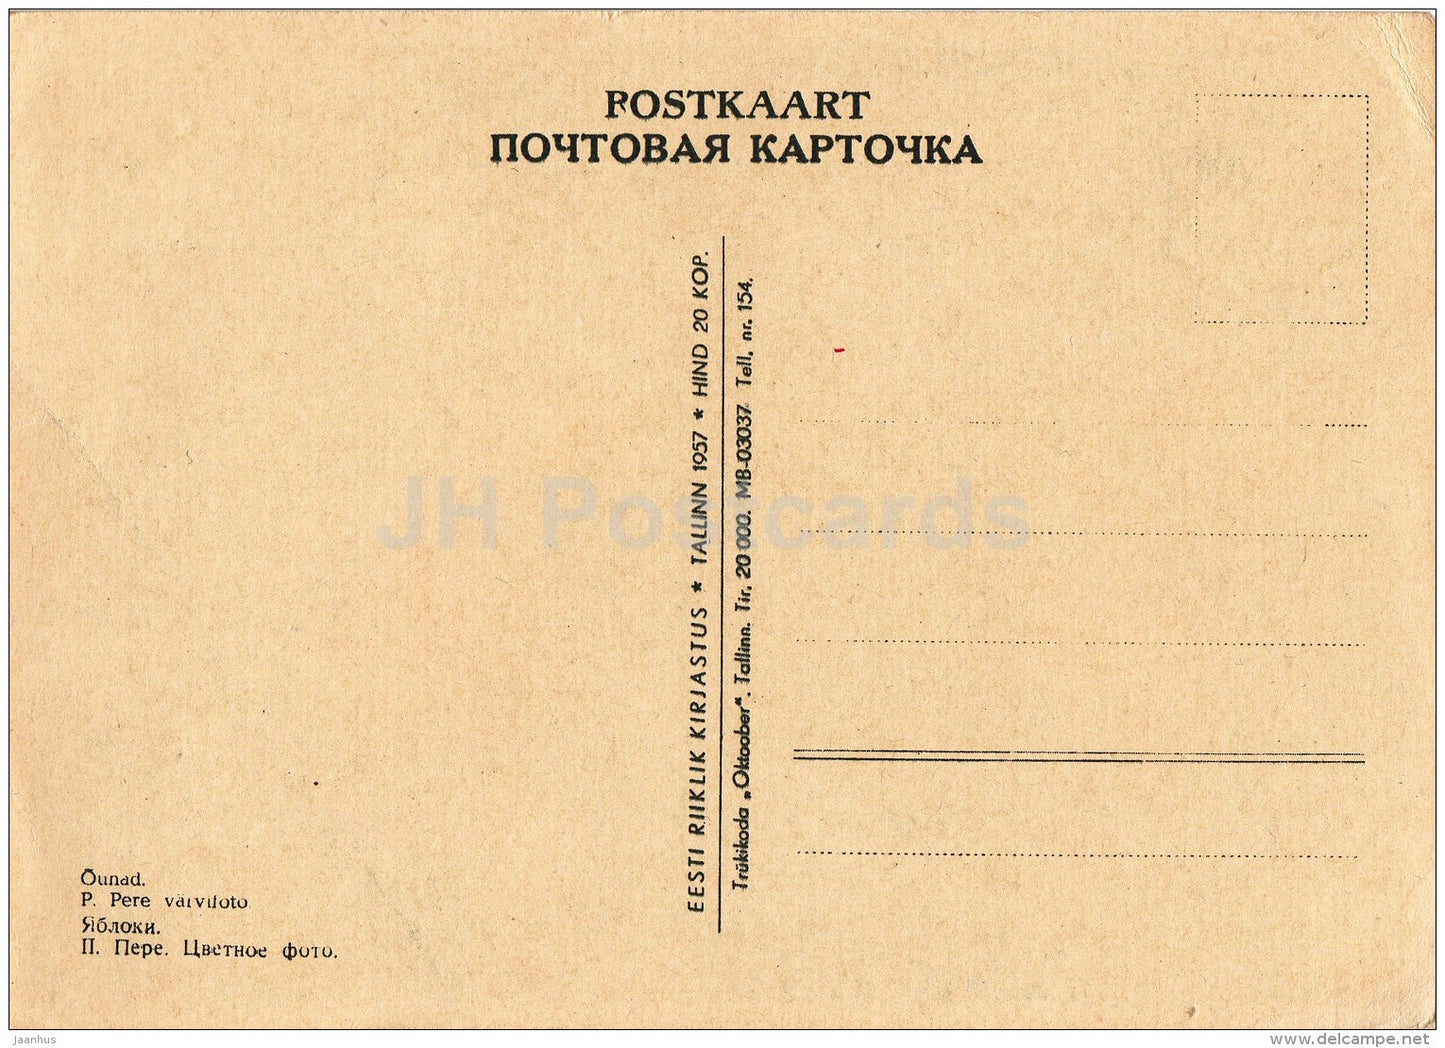 Apple Tree - apples - 1957 - Estonia USSR - unused - JH Postcards